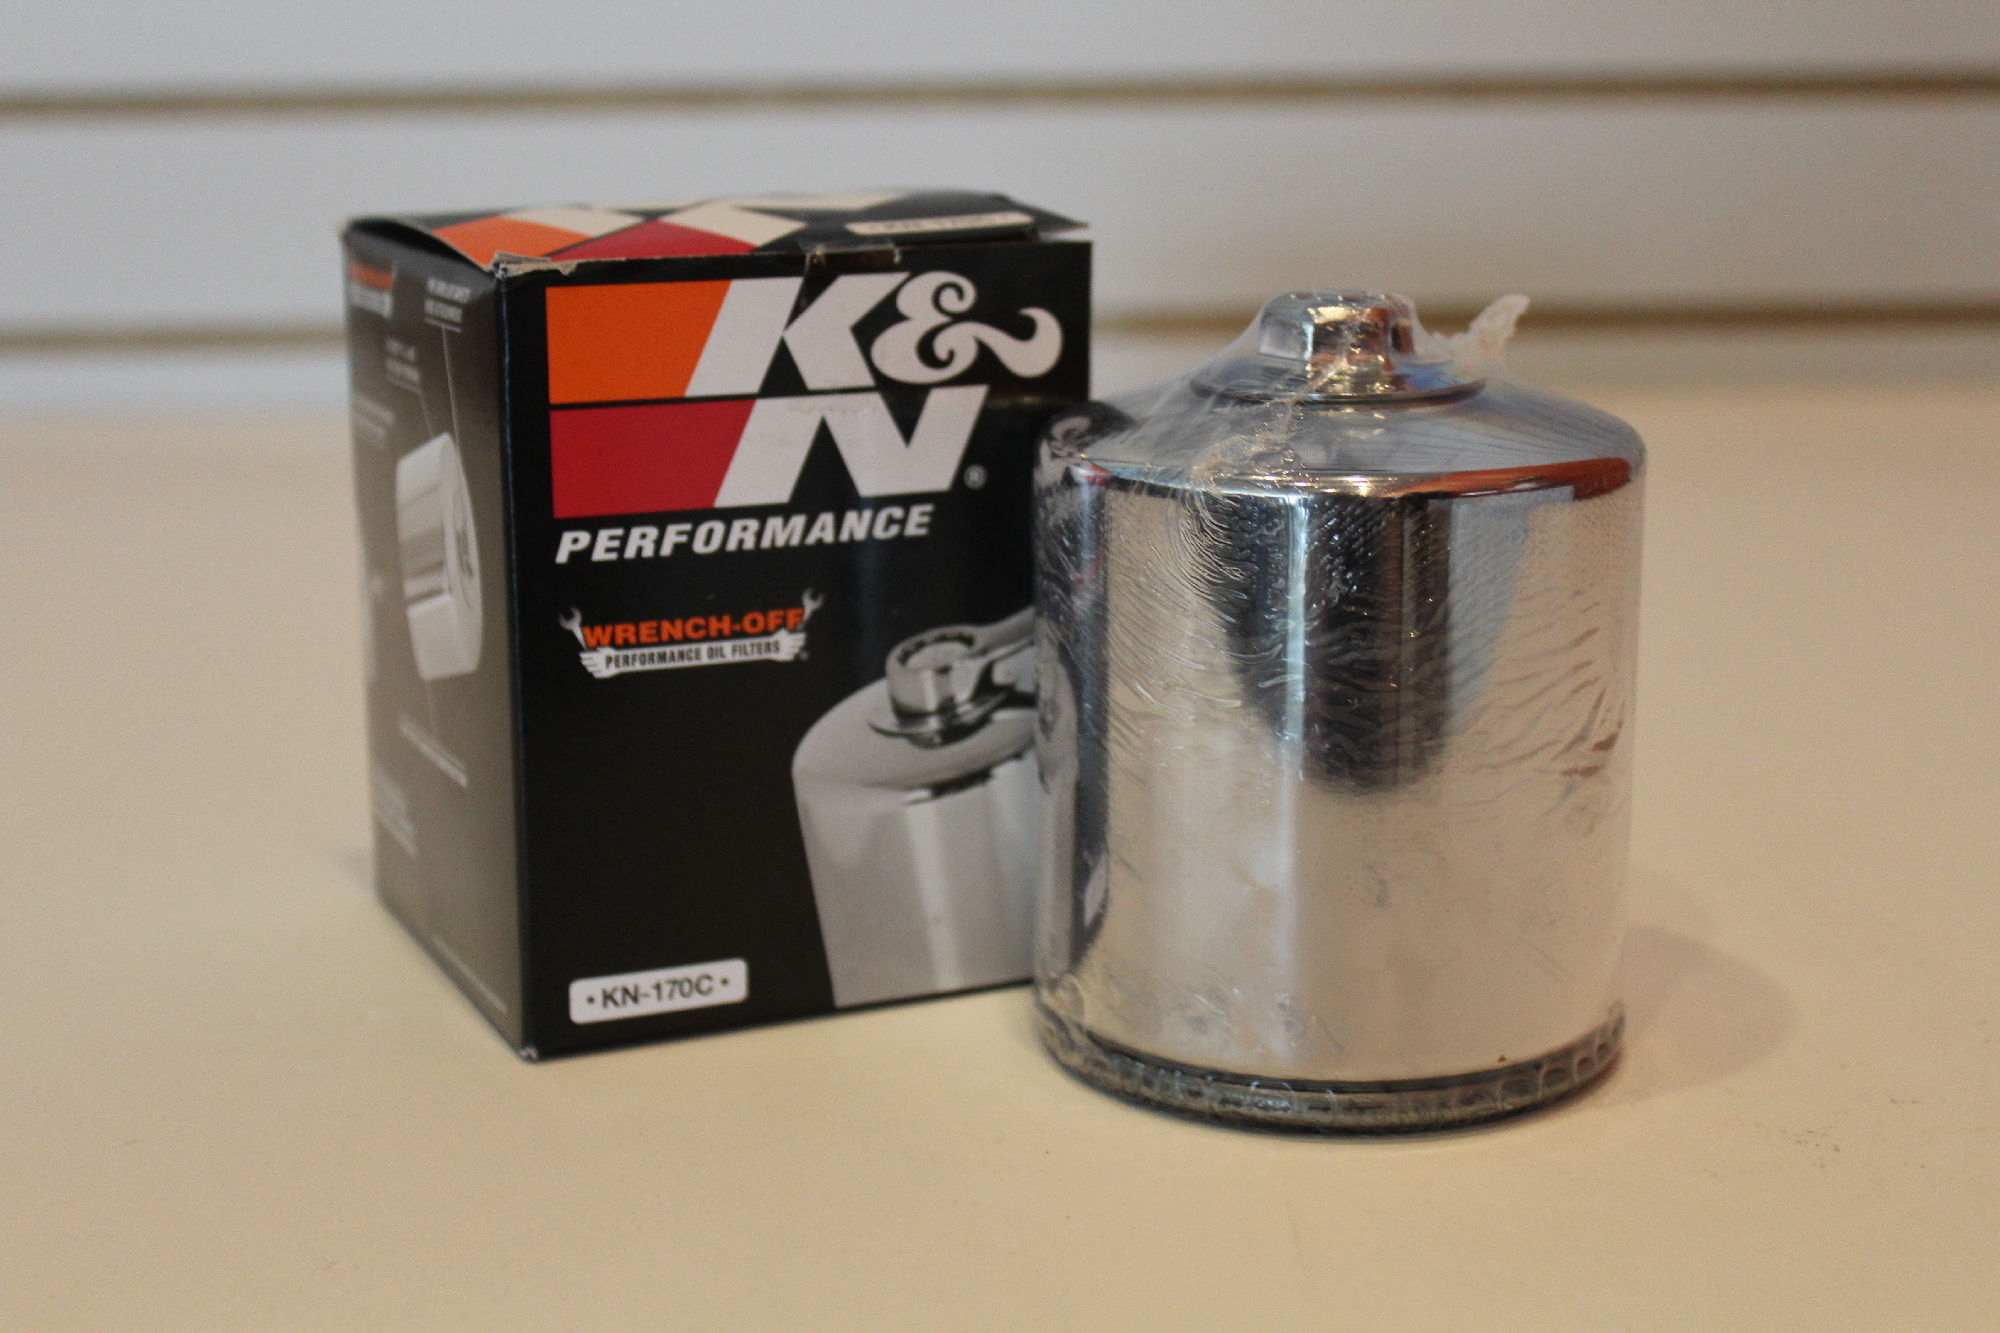 K&N KN-170C Chrome Oil Filter for Harley 80-98 FLT 84-99 Softail & Sportster